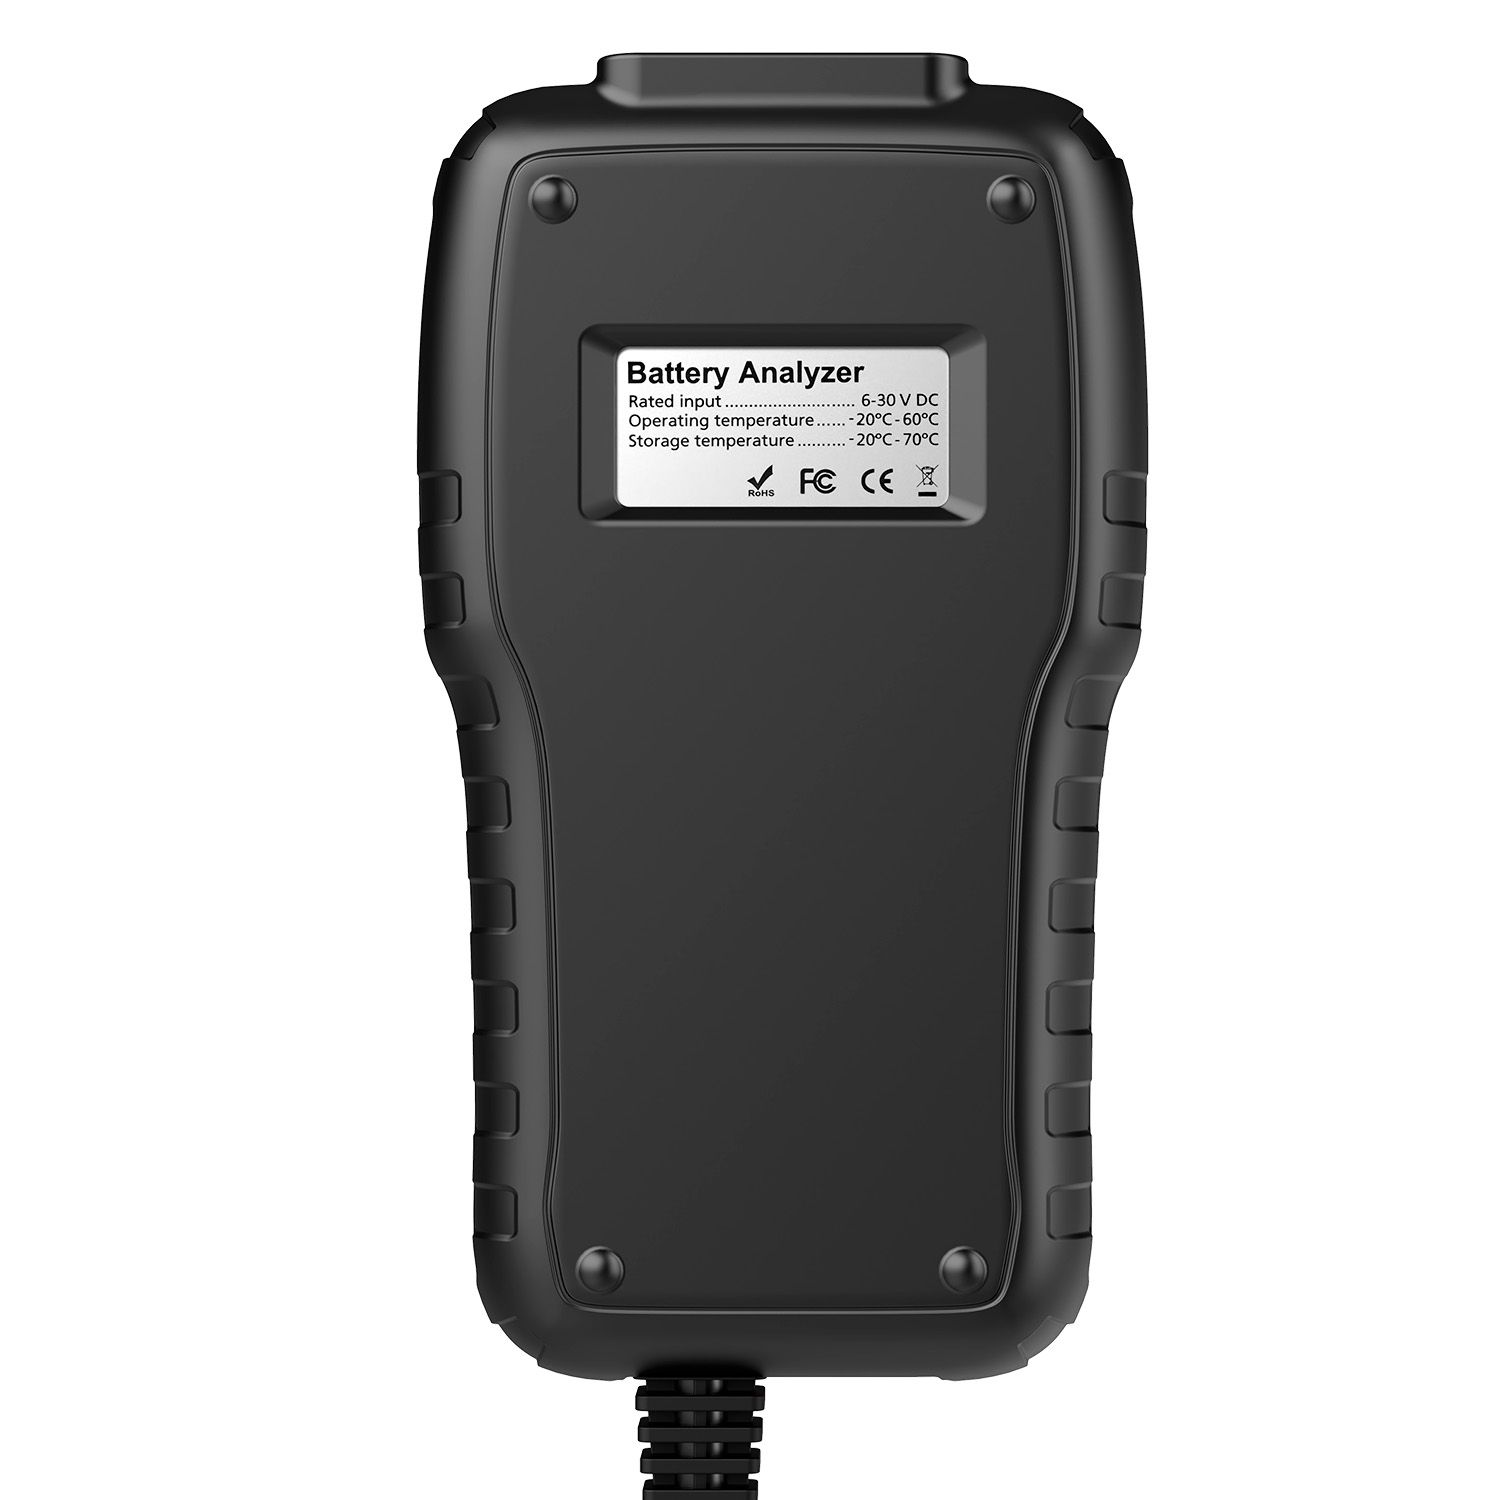 El analizador de batería foxwell BT - 715 admite la sustitución multilingüe de foxwell BT - 705